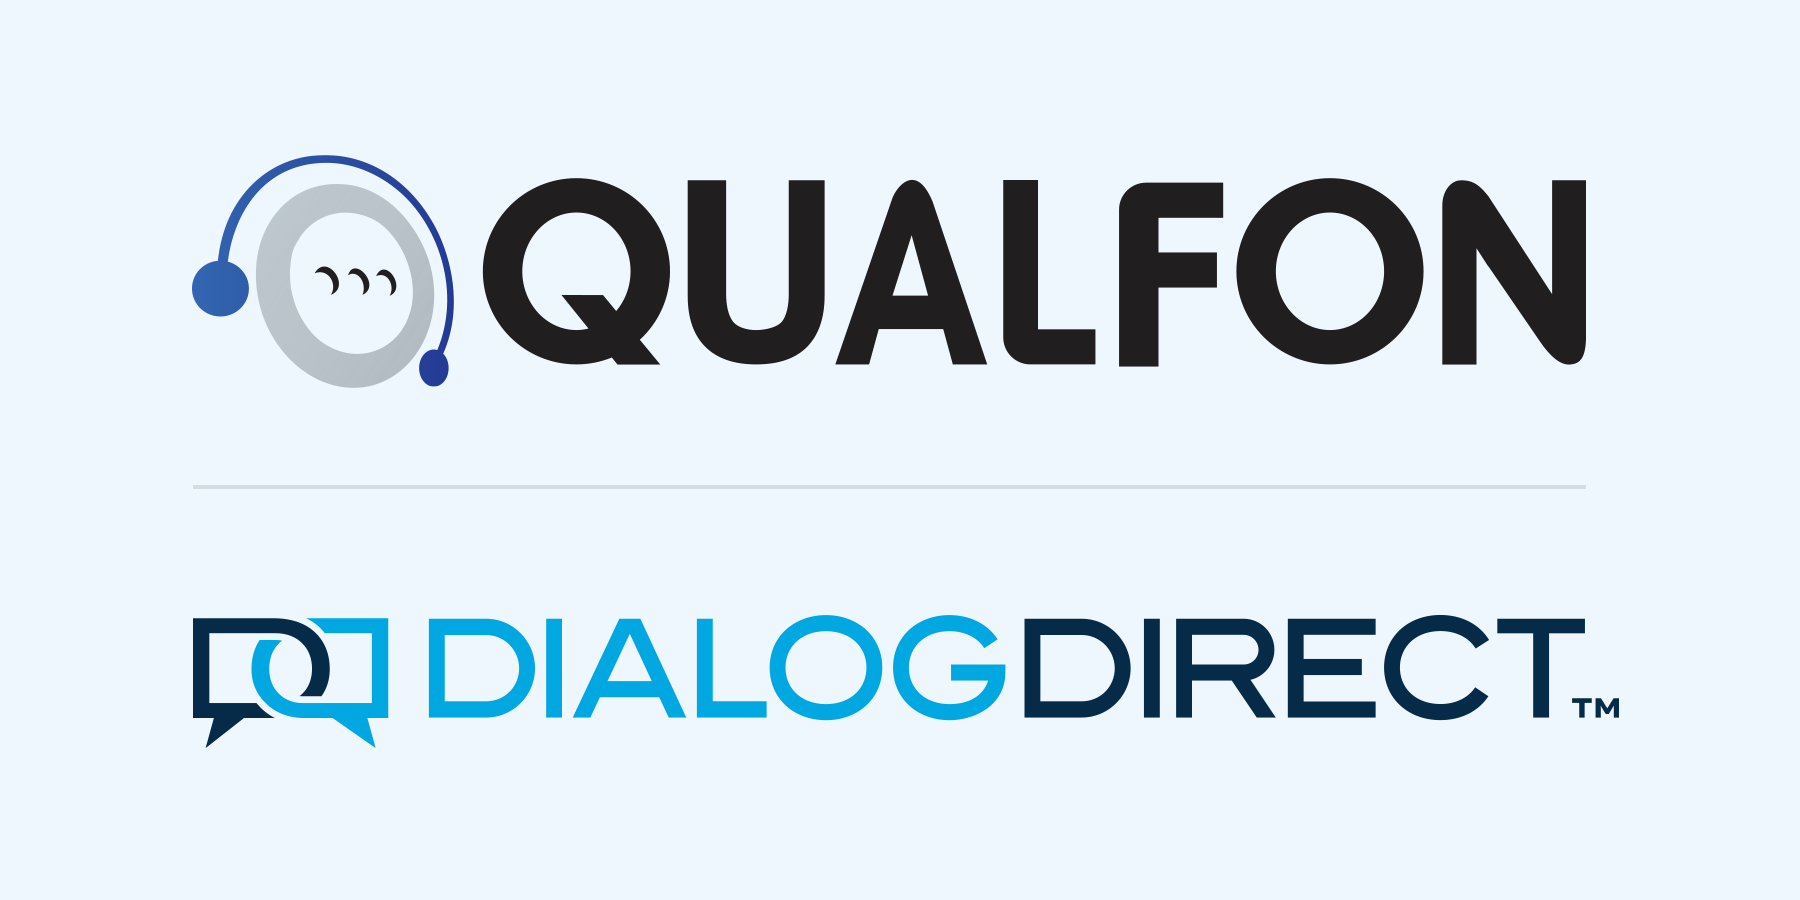 Qualfon Acquires Dialog Direct